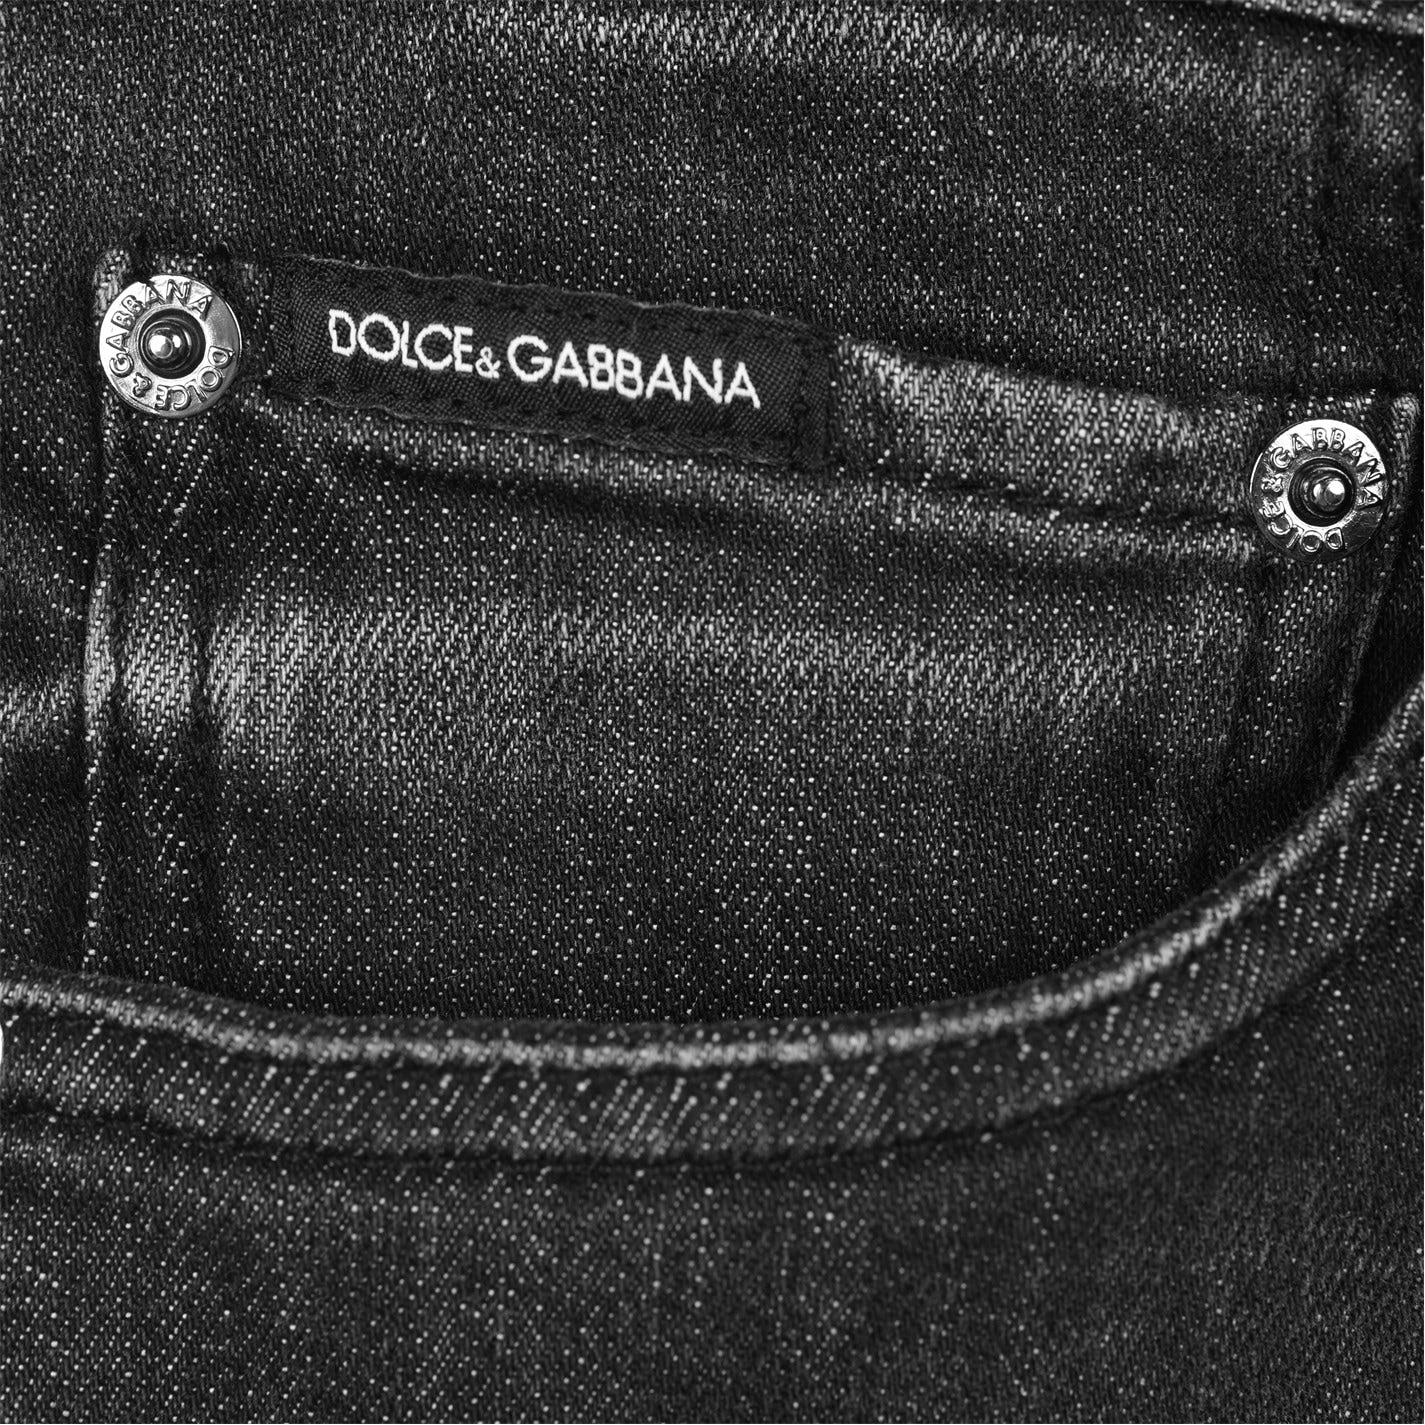 Dolce & Gabbana Dark Wash Skinny Jeans - DANYOUNGUK